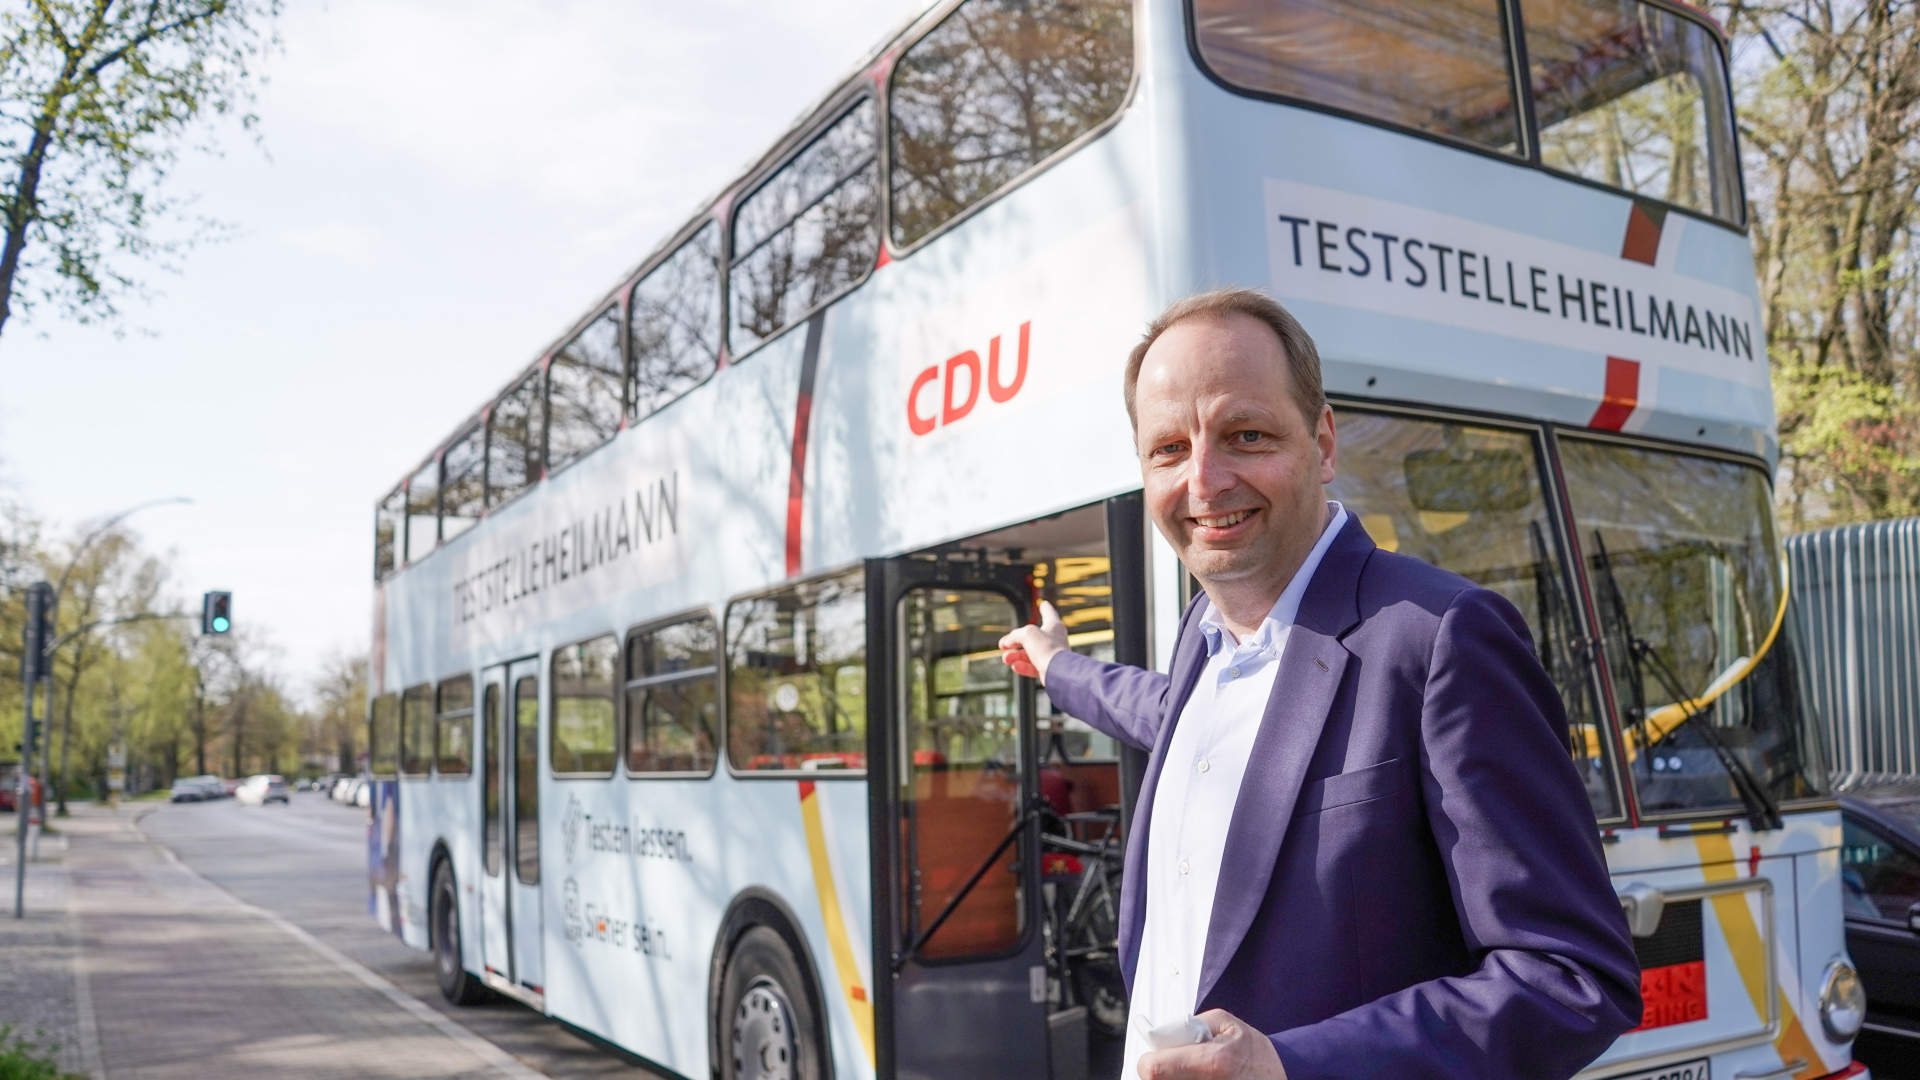 Der Berliner CDU-Bundestagsabgeordnete Thomas Heilmann vor seinem als Teststelle eingerichteten Wahlkampfbus. | dpa